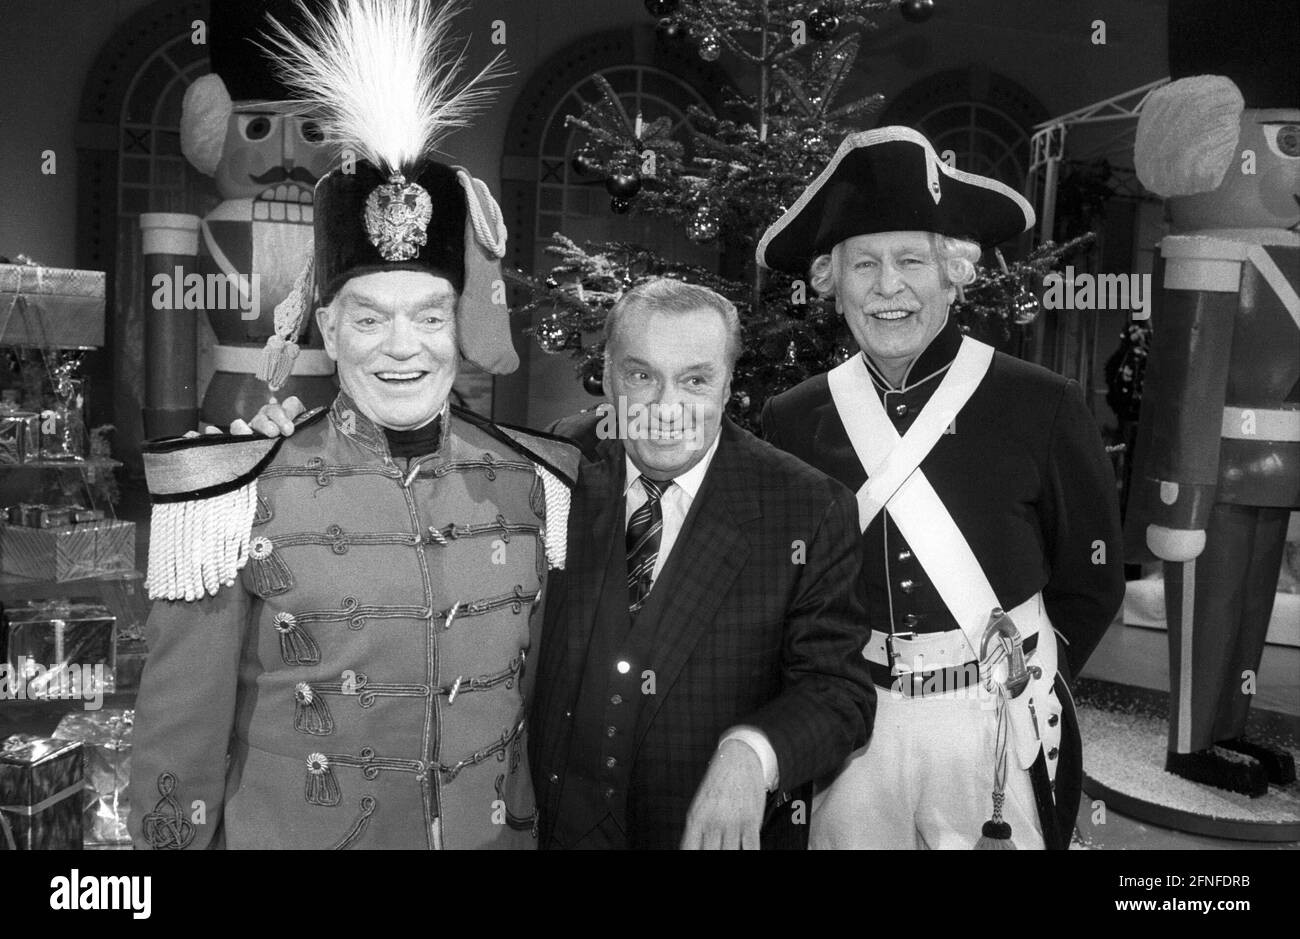 Die deutschen Komiker Hans Richter, Heinz Schenk und Friedrich Schoenfelder (von links) in der Show 'Fröhlich eingedeckt'. Undatierte Aufzeichnung. [Automatisierte Übersetzung] Stockfoto